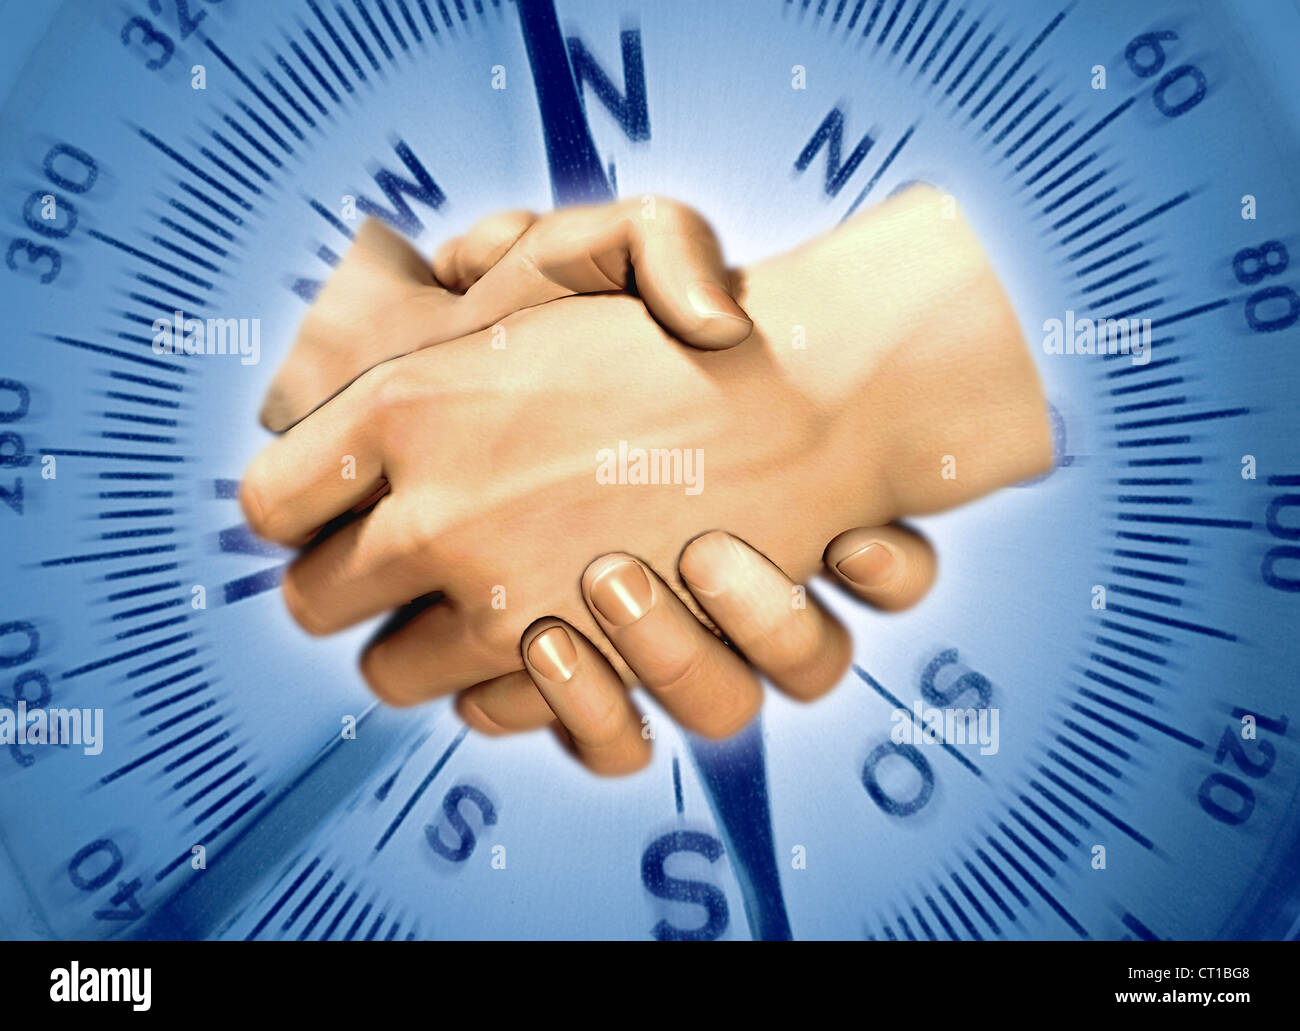 Serrer la main en face d'une boussole - échelle 2 reichen Hände vor einem main sich die im Hintergrund Kompass Banque D'Images